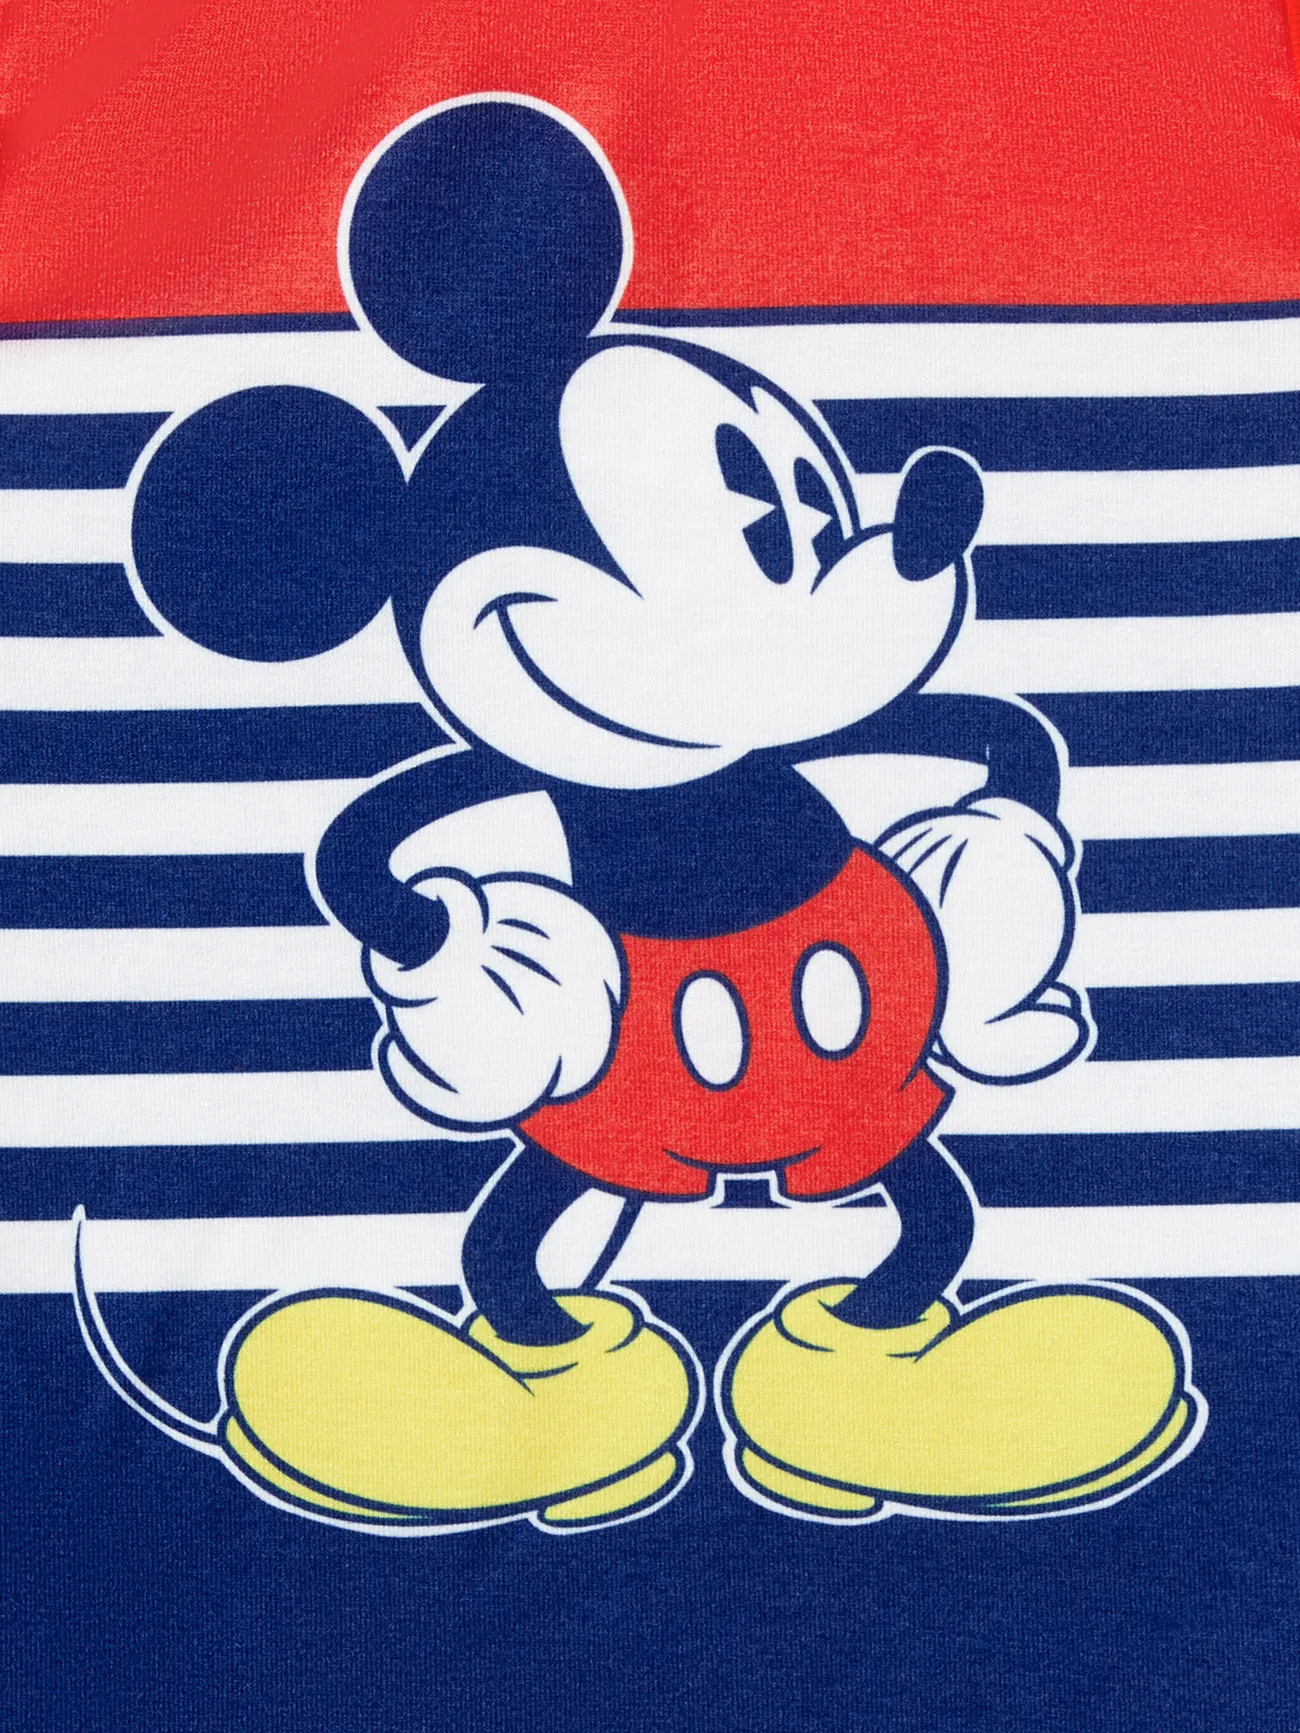 Disney Mickey and Friends أطقم إطلالة العائلة للجنسين توب بحمالات توب بحمالات خياطة النسيج خطوط اليوم الوطني احمر ابيض big image 1